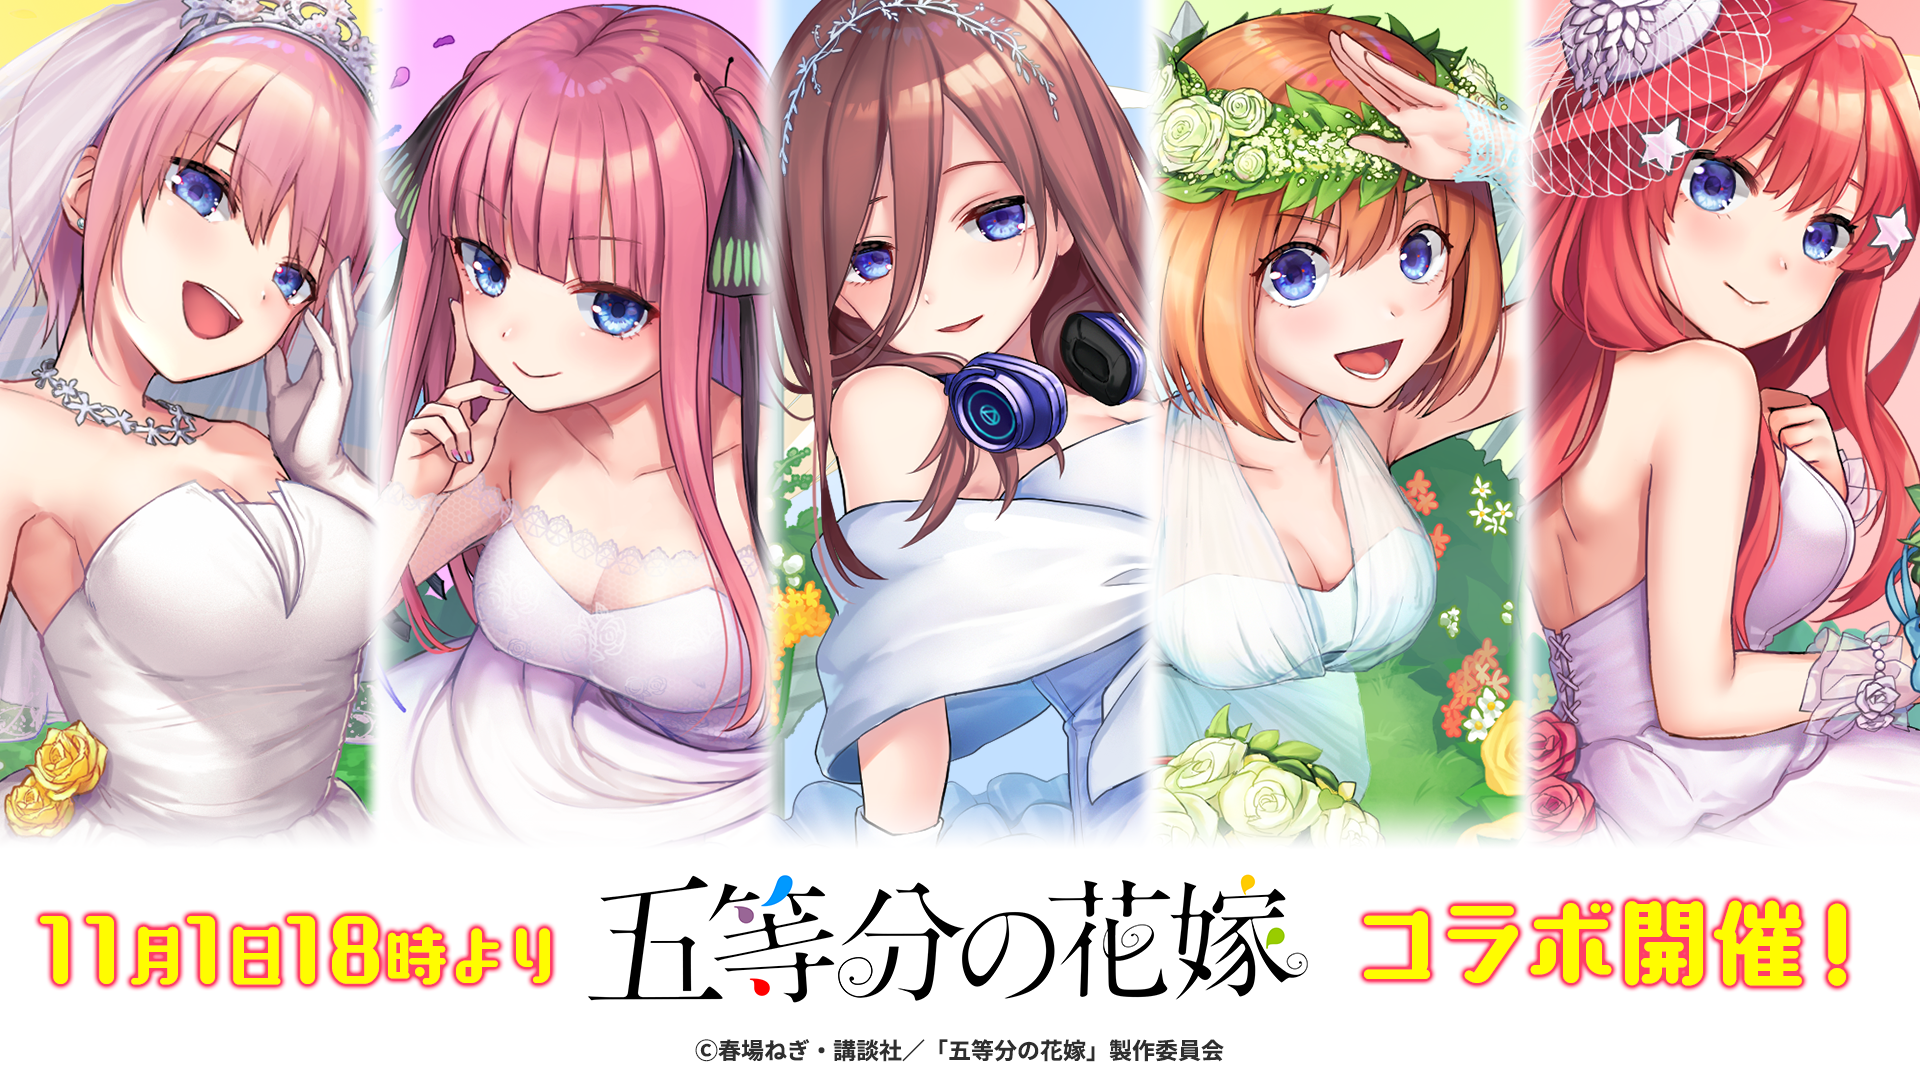 英語とクイズのココロセカイ 19年11月1日より第二回となるアニメ 五等分の花嫁 とのコラボイベントを開催 Game Appli Info